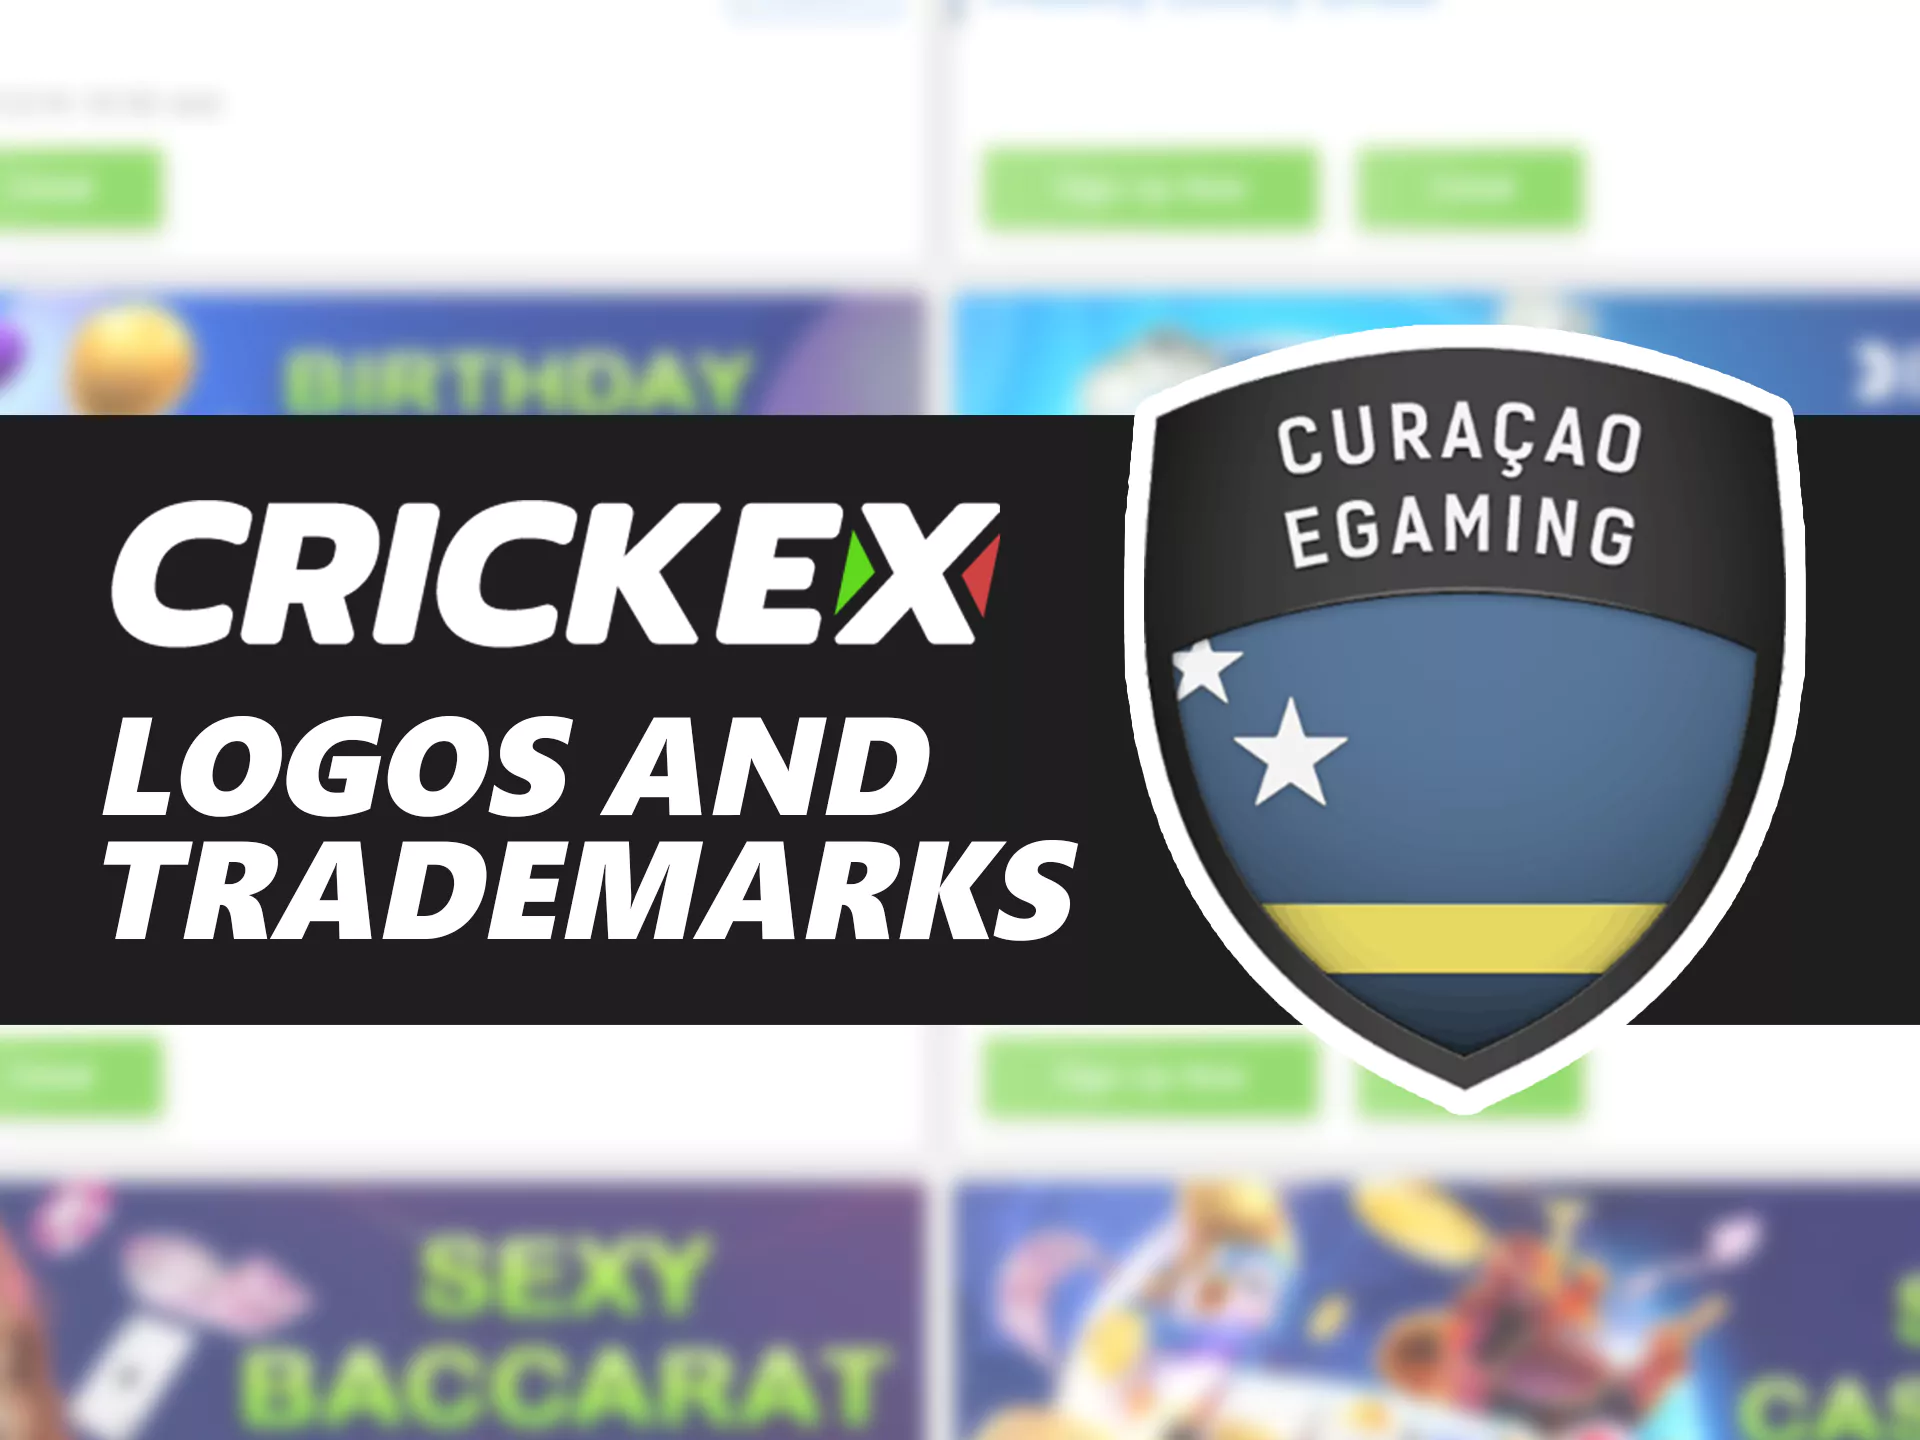 Crickex use trademarks and logo.